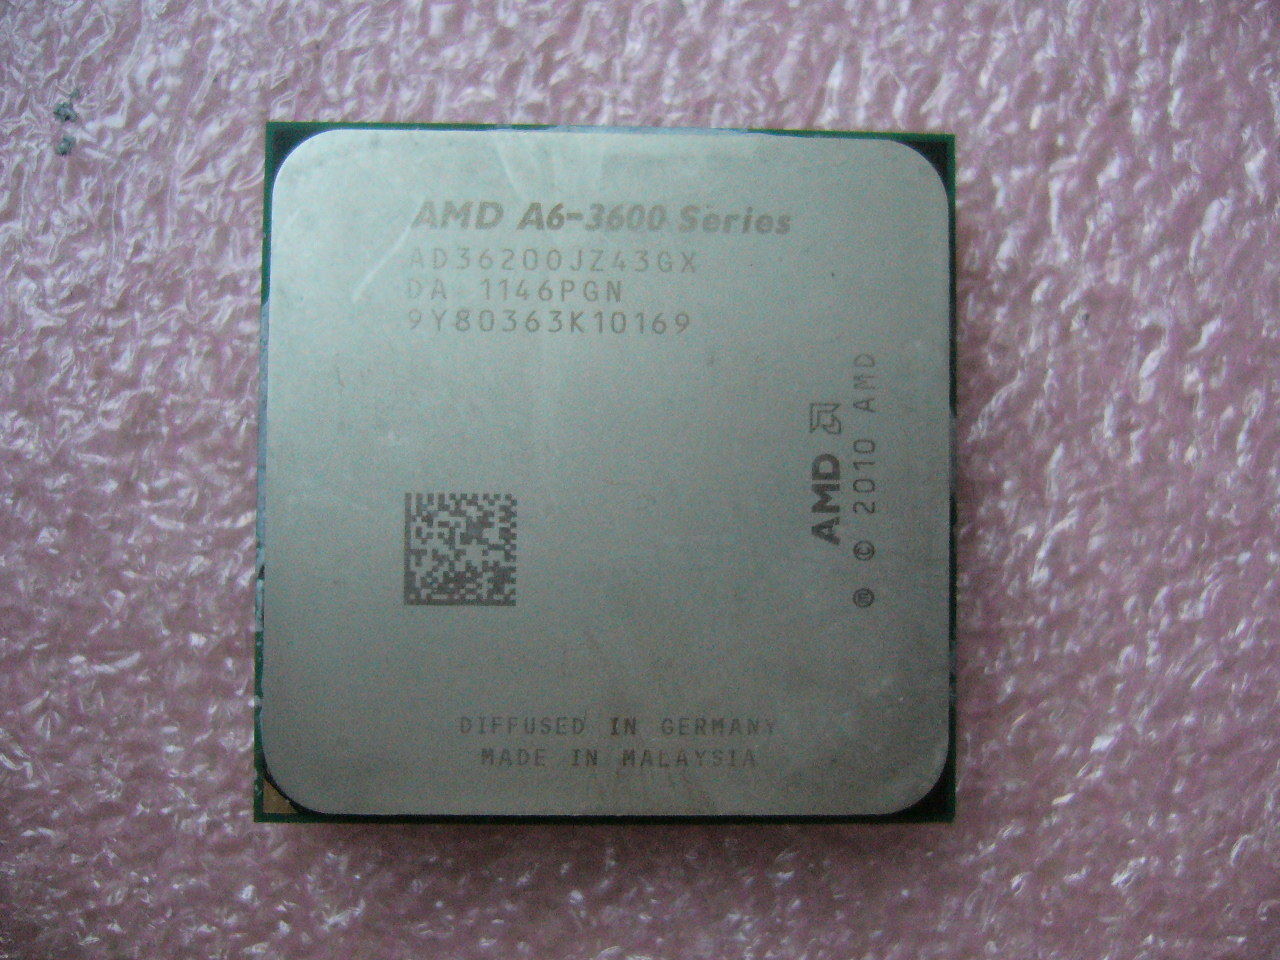 QTY 1x AMD A6-3620 2.2 GHz Quad-Core (AD3620OJZ43GX) CPU Socket FM1 NOT WORKING